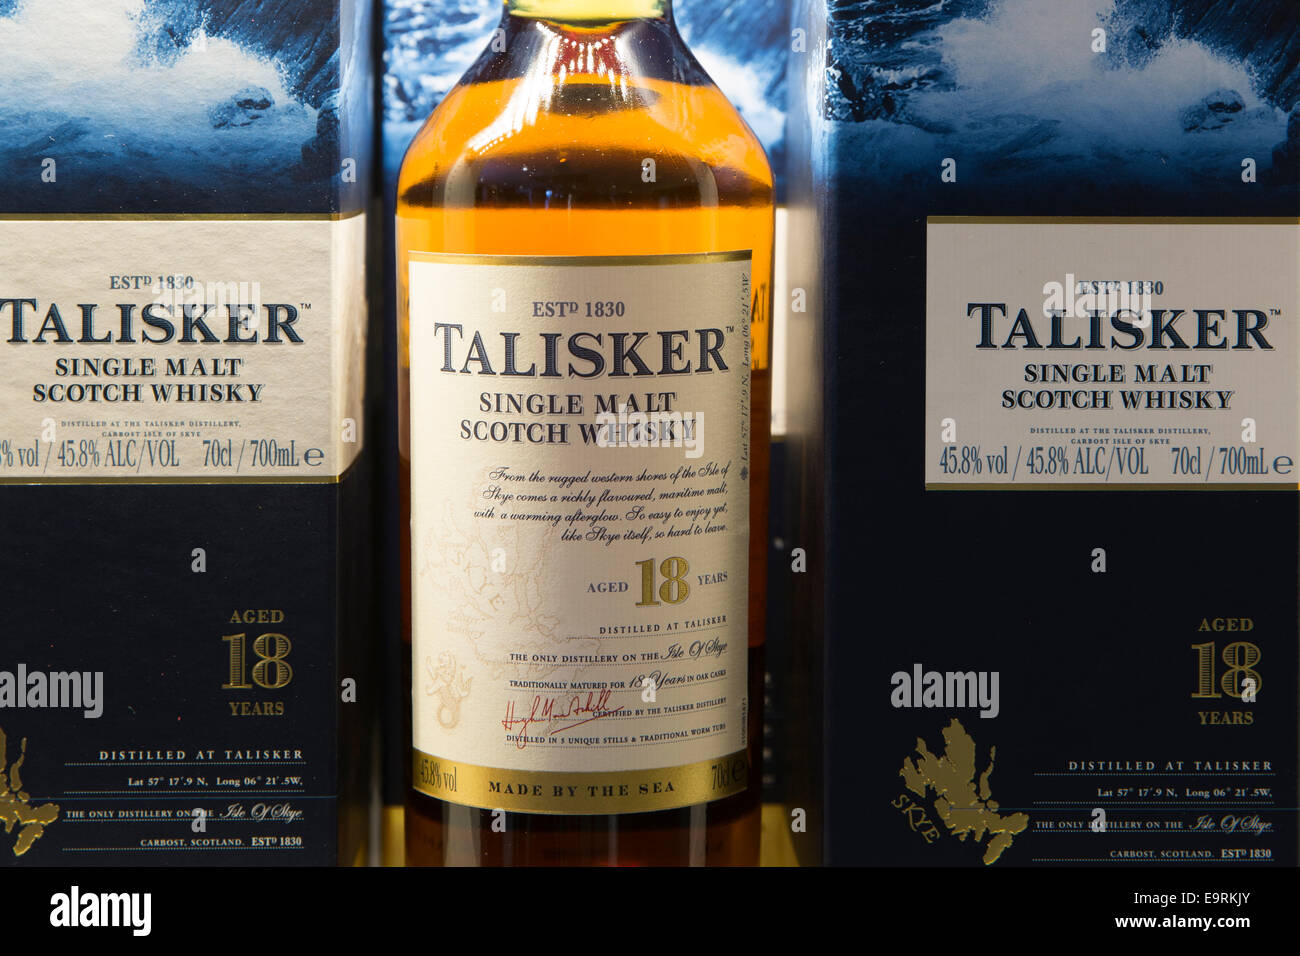 75 cl Flaschen 18-j hrige Talisker Single malt Scotch Whisky in Kartons auf dem Display für Verkauf im Shop auf Besucher-Tour destilliert Stockfoto